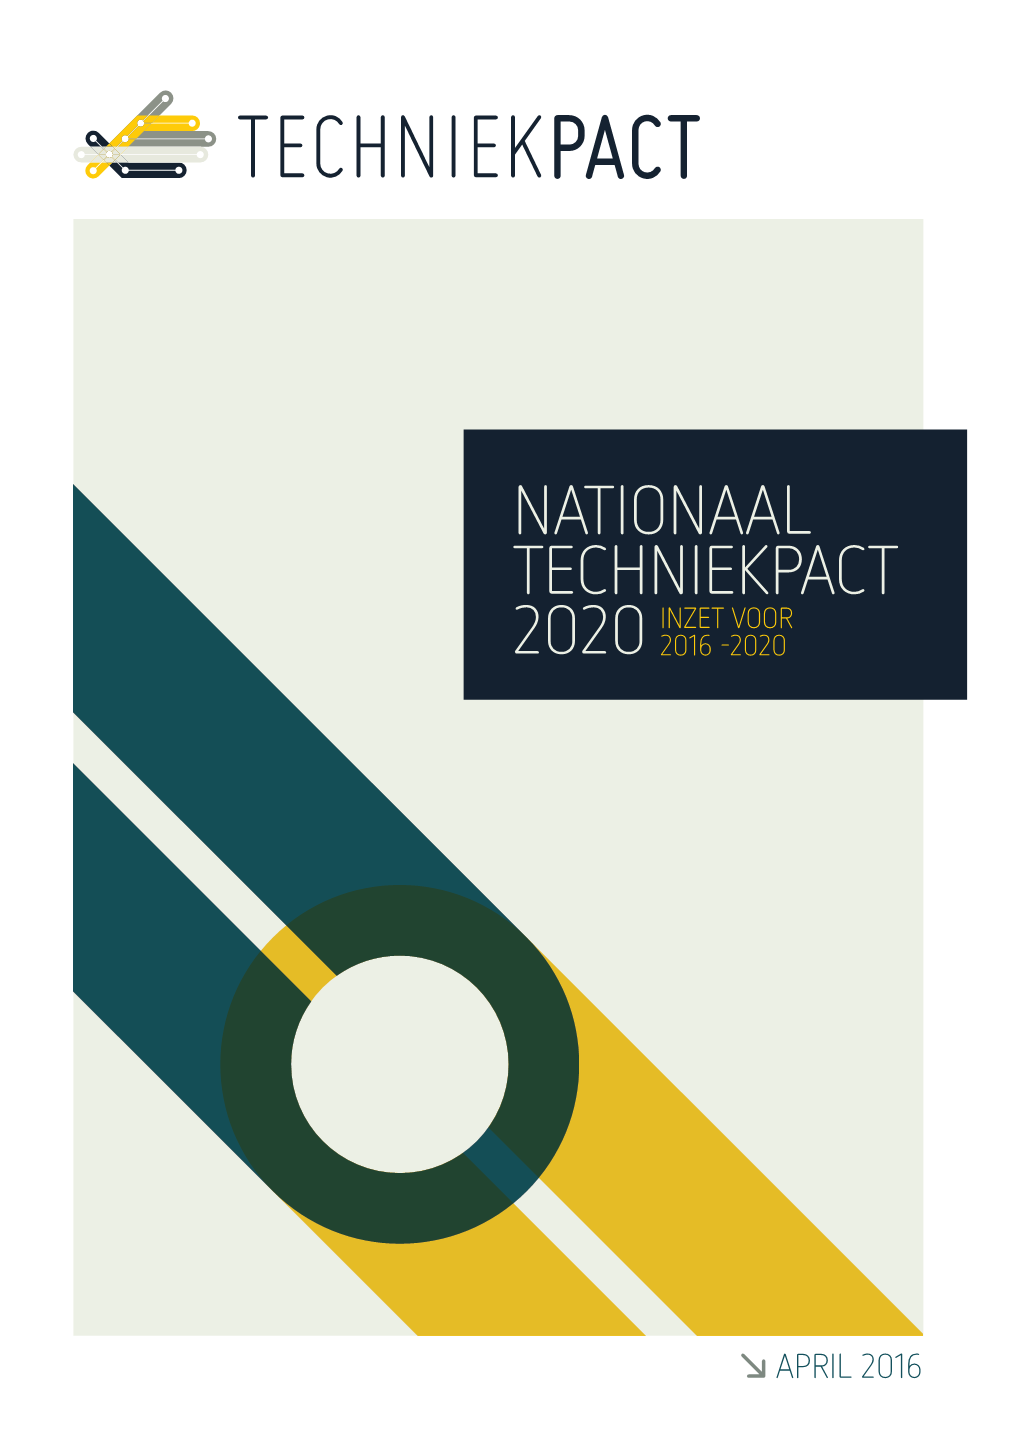 Techniekpact Inzet 2016-2020